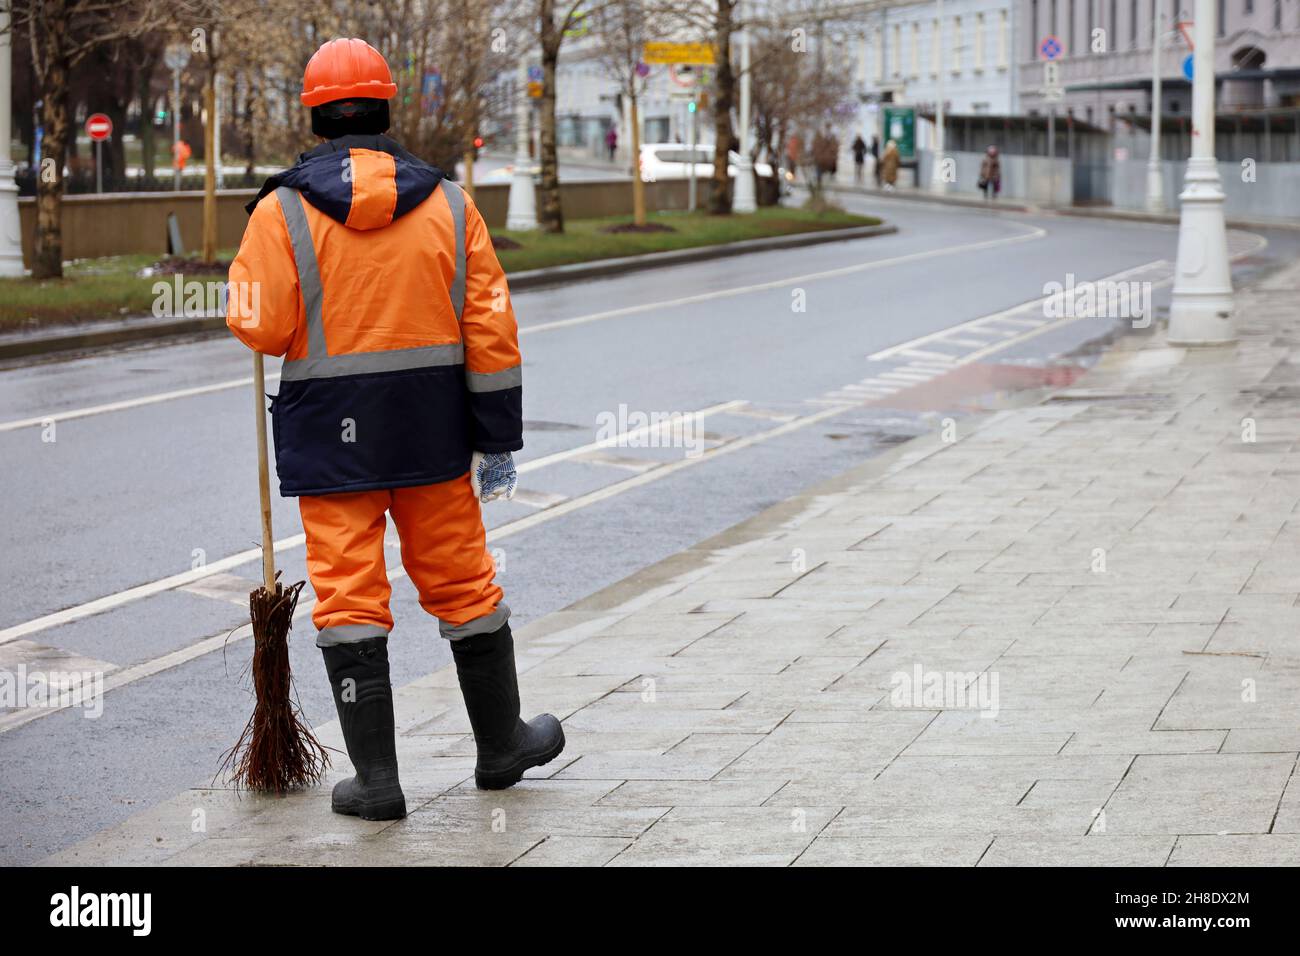 Concierge avec balai dans la ville d'hiver, ouvrier municipal masculin en uniforme sur le trottoir.Nettoyage de rue, concept de main-d'œuvre non qualifiée Banque D'Images